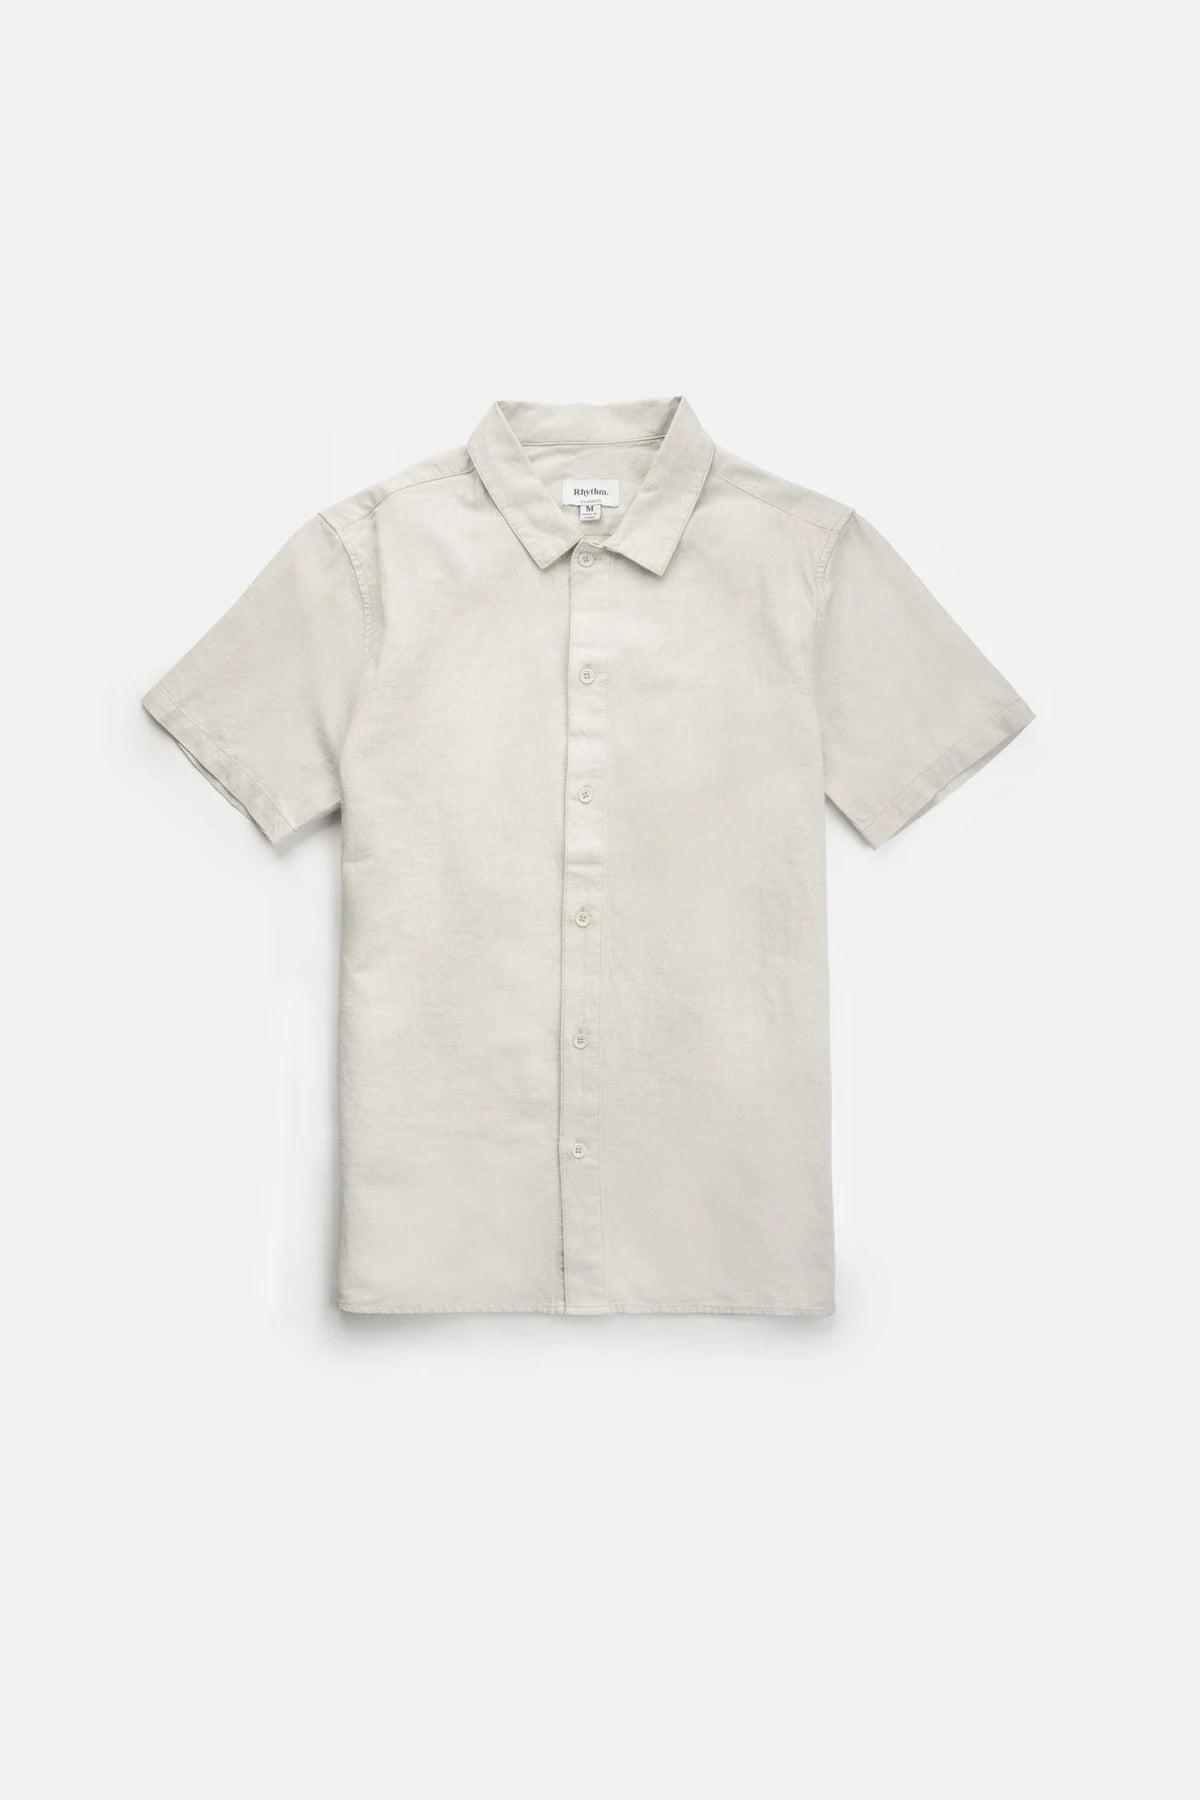 Rhythm Classic Linen SS Shirt - Sand